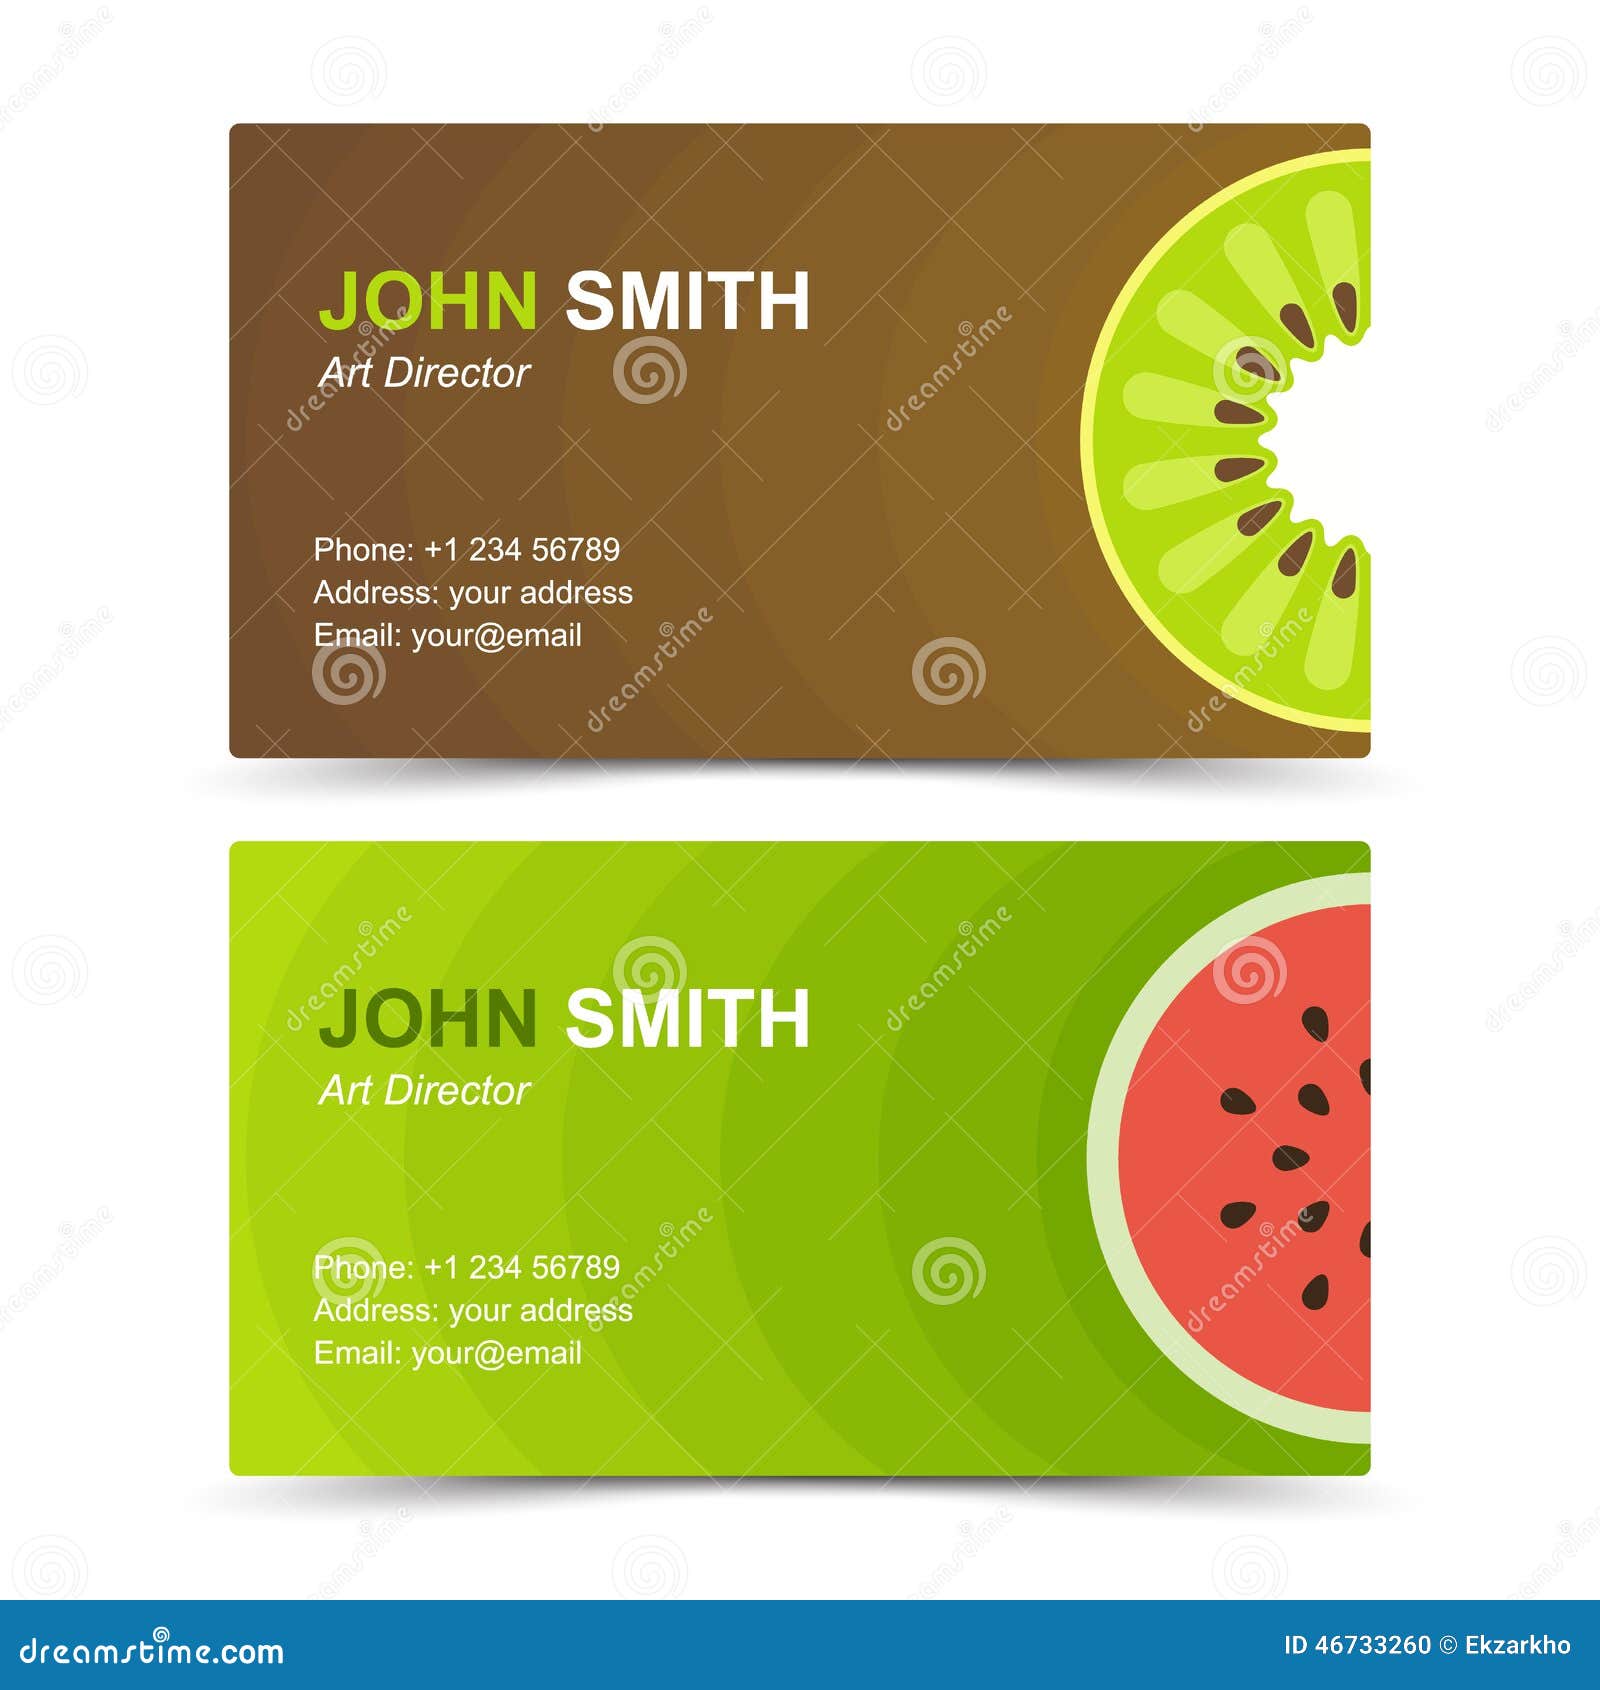 Kết quả hình ảnh cho mẫu thẻ khách hàng cho cữa hàng trái cây